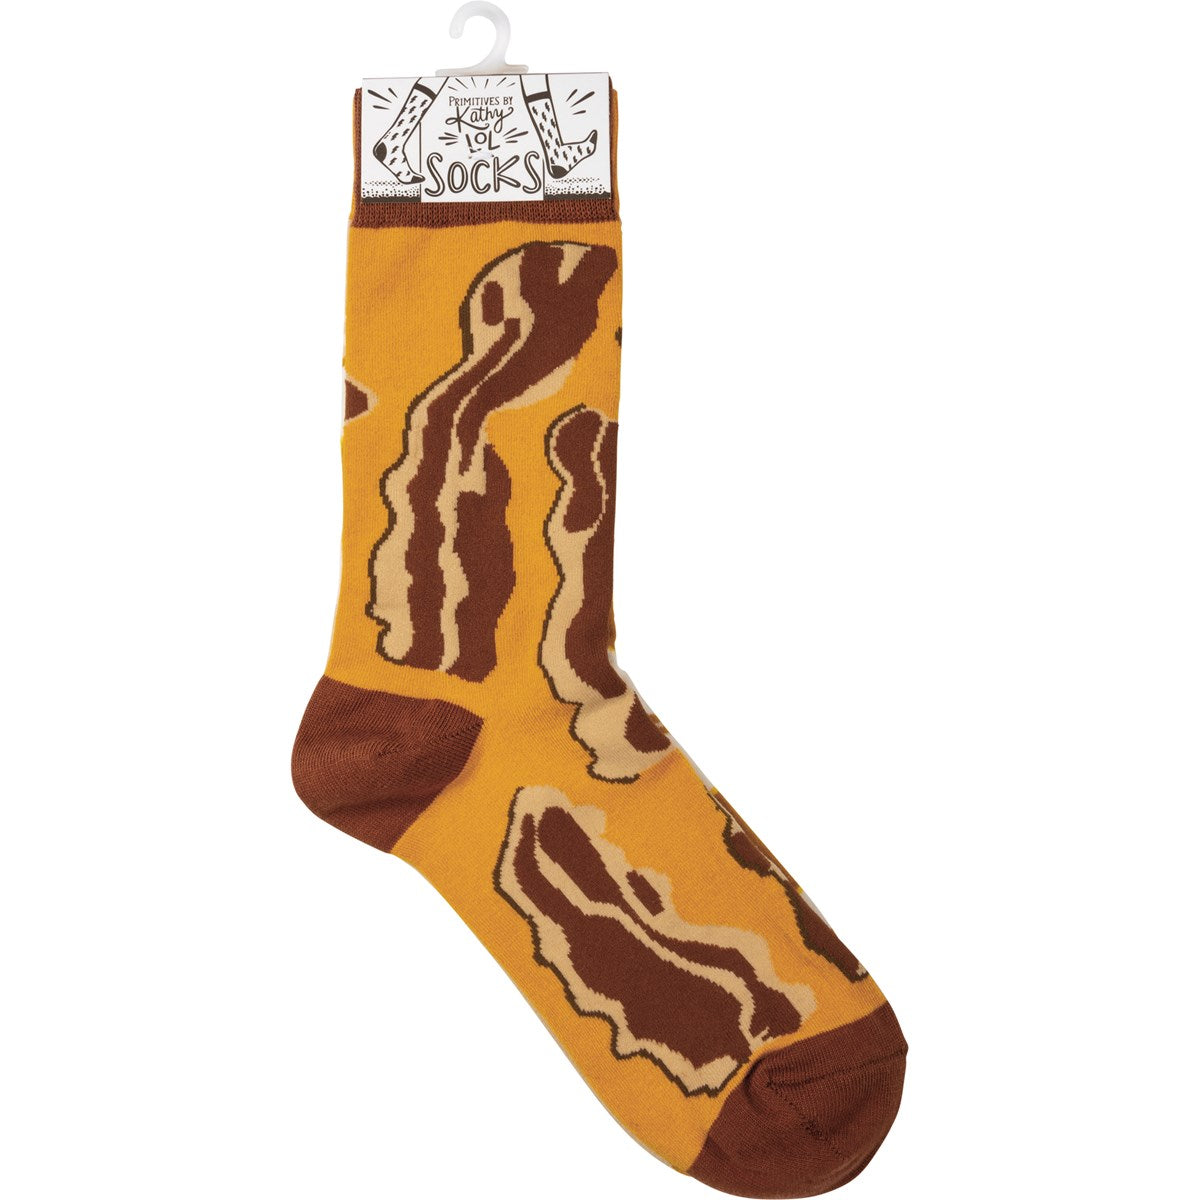 Bacon & Eggs Socks